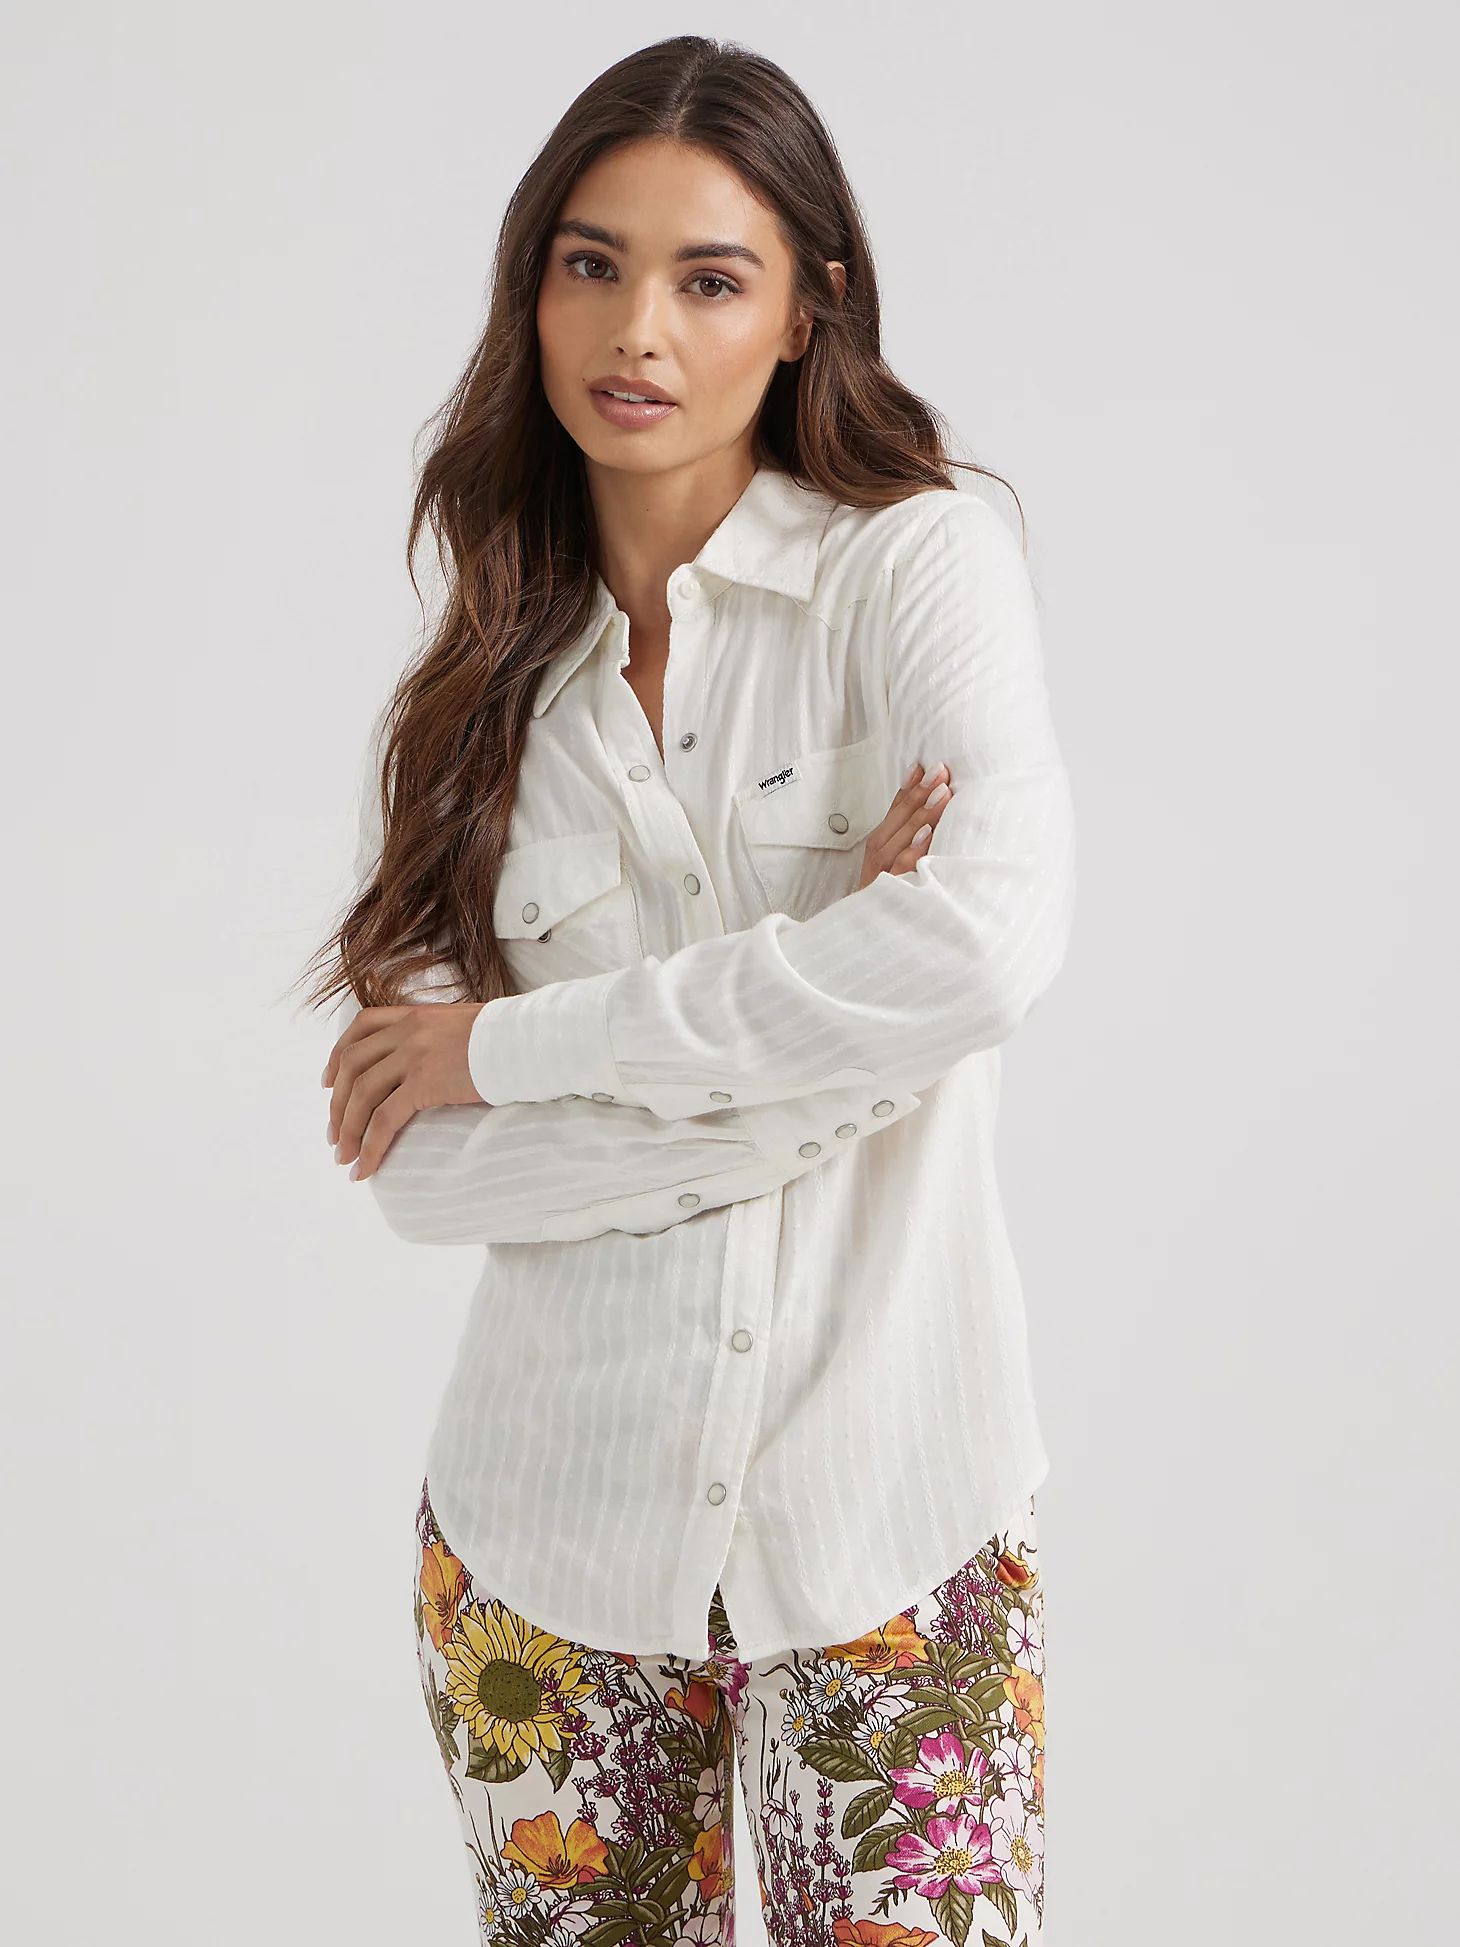 Women's Western Slim Fit Shirt in Vintage White | Wrangler